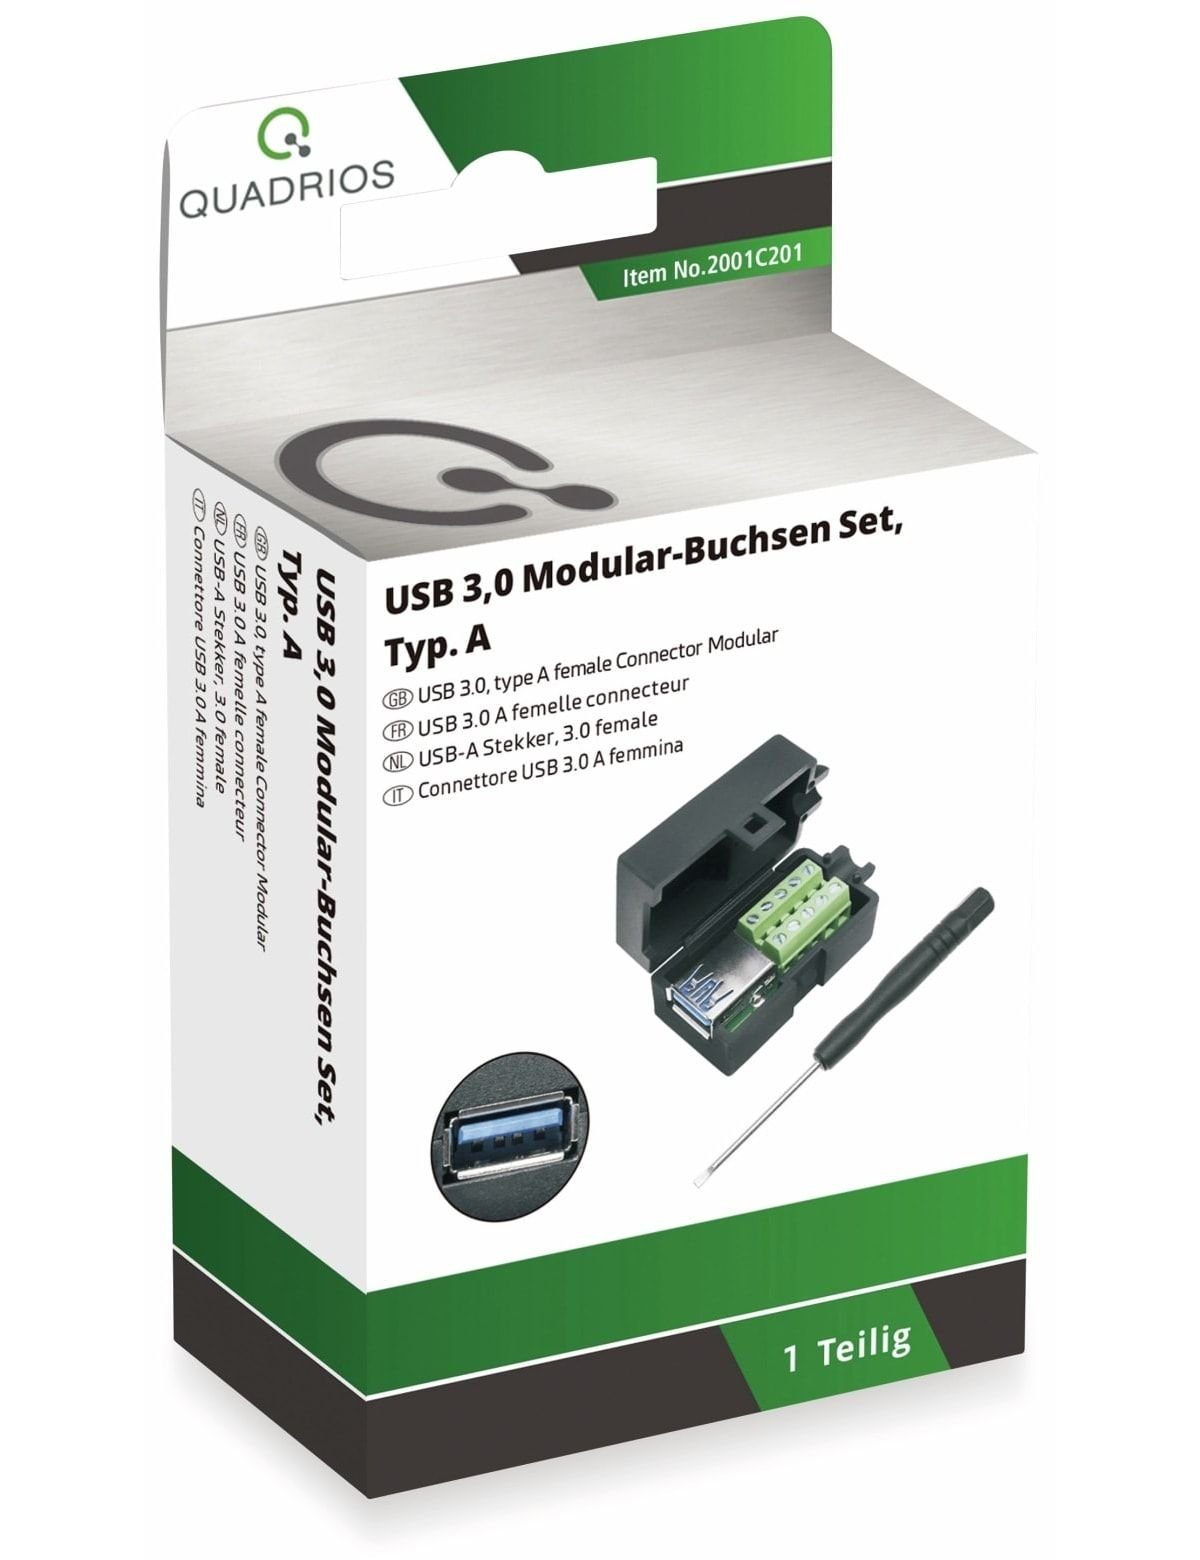 QUADRIOS, USB Quadrios 2001C201, Klemmen - 3.0 USB-Modular-Set,